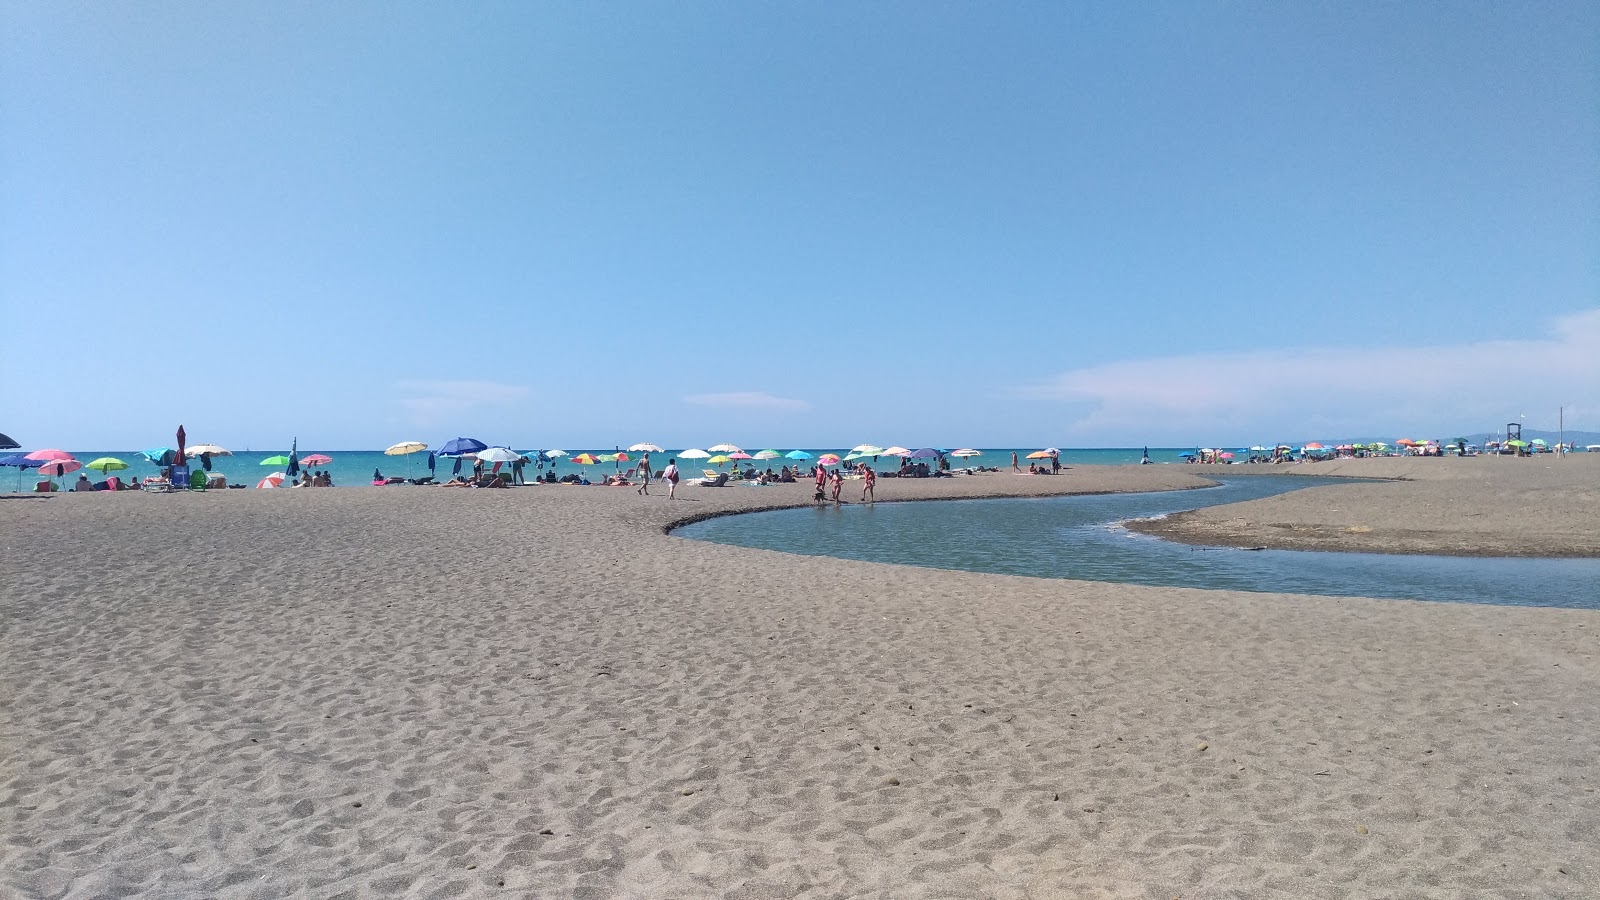 Zdjęcie Etruria beach - popularne miejsce wśród znawców relaksu